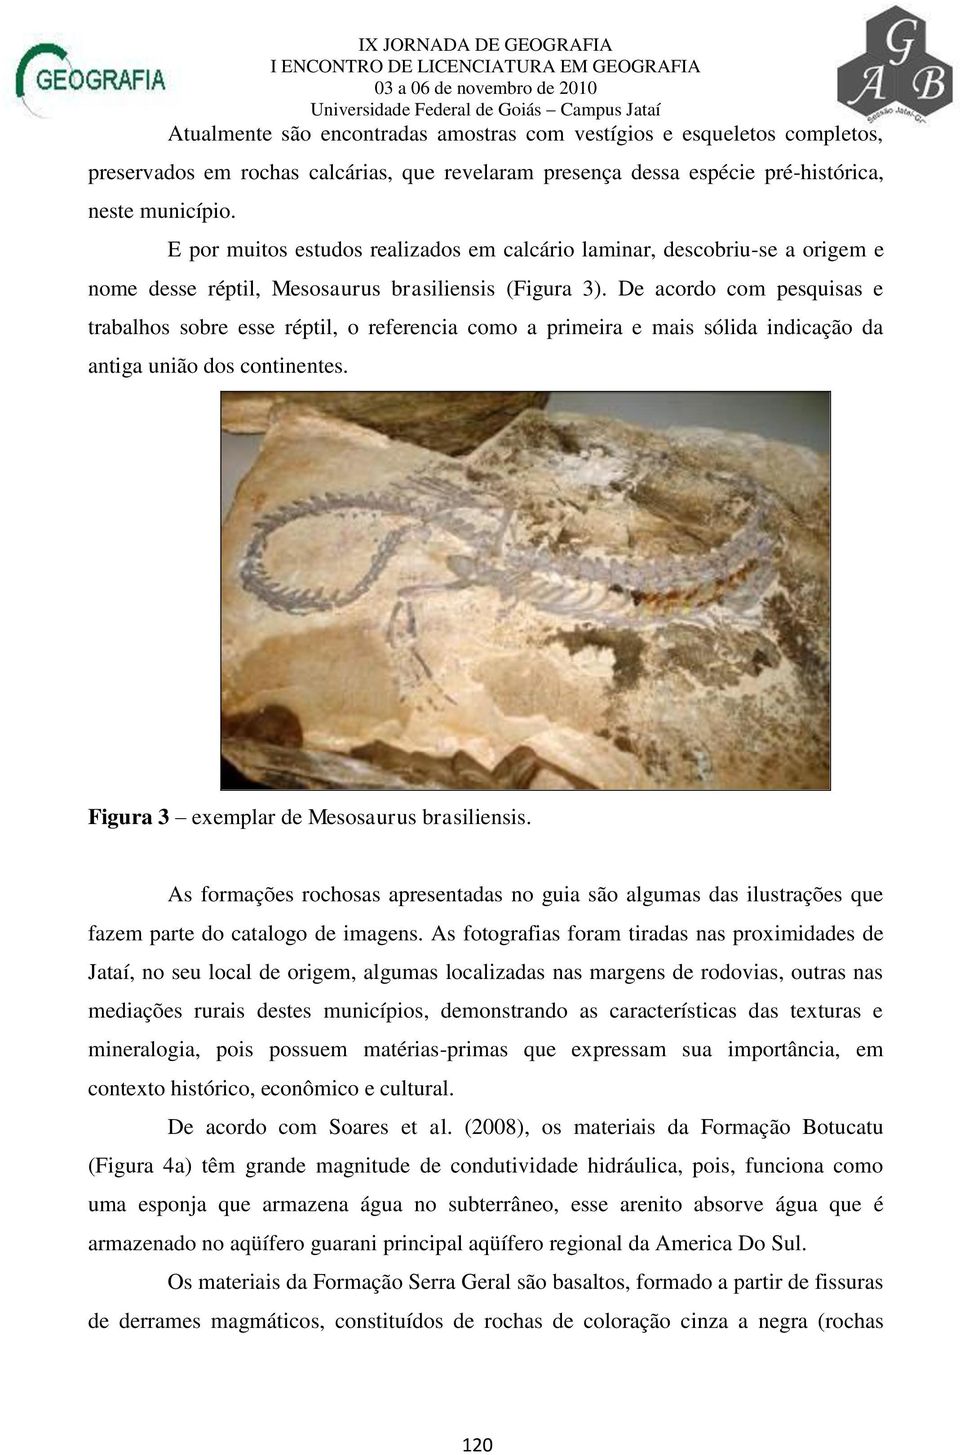 De acordo com pesquisas e trabalhos sobre esse réptil, o referencia como a primeira e mais sólida indicação da antiga união dos continentes. Figura 3 exemplar de Mesosaurus brasiliensis.